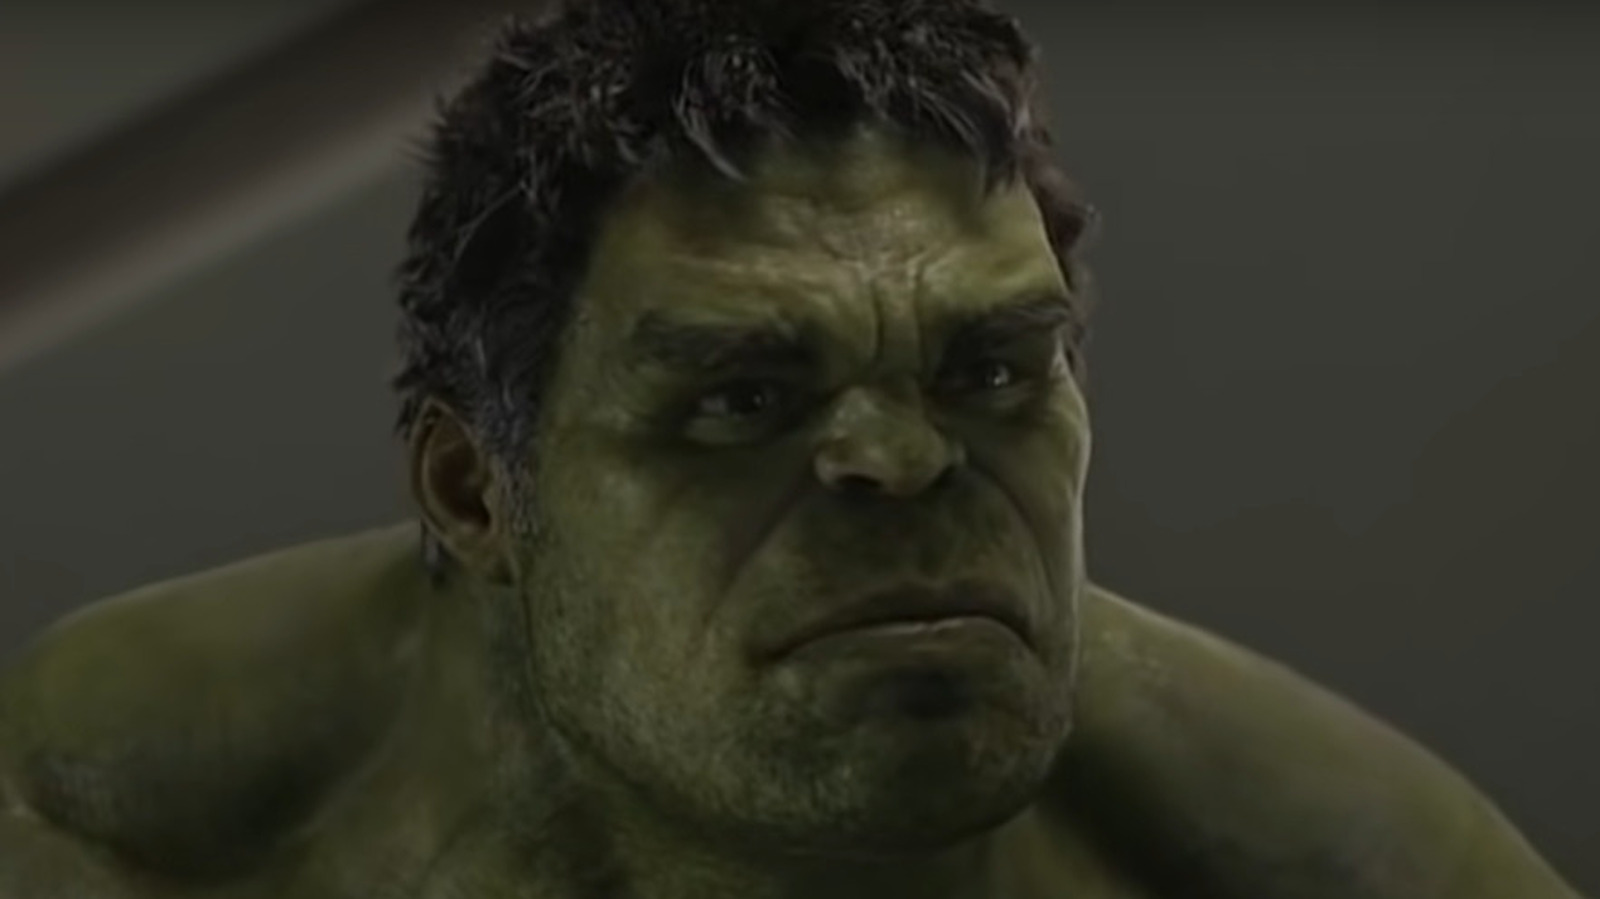 The Hulk in the MCU